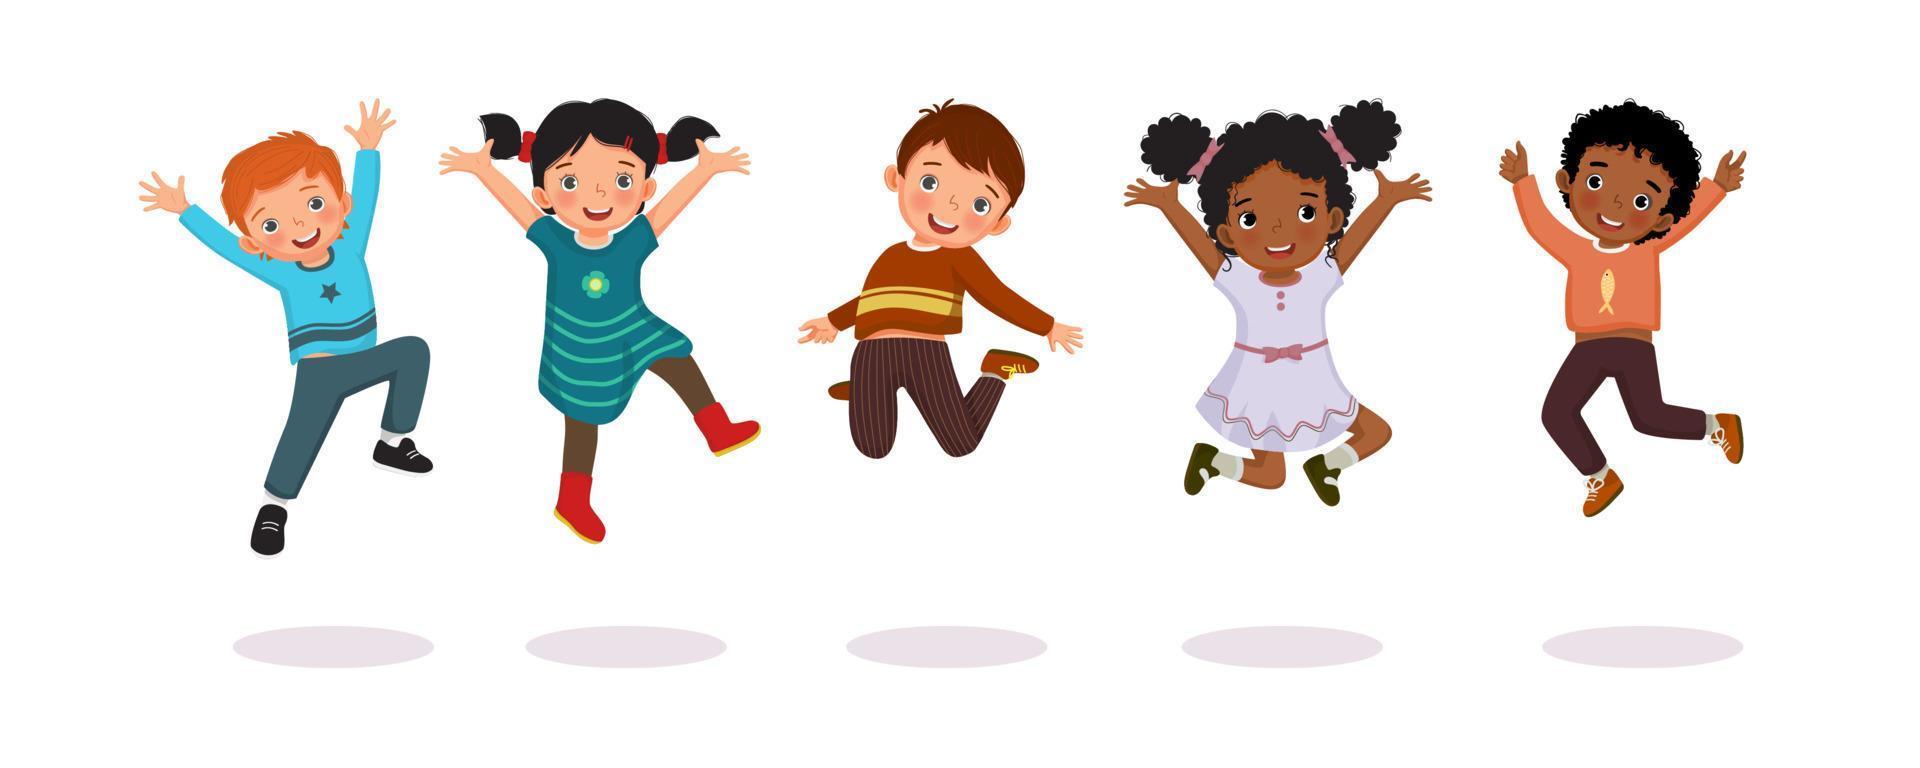 groupe d'enfants heureux sautant ensemble joyeusement avec les mains levées en l'air. image vectorielle de petits enfants actifs, garçons et filles, s'amusant à montrer différentes poses d'action. vecteur